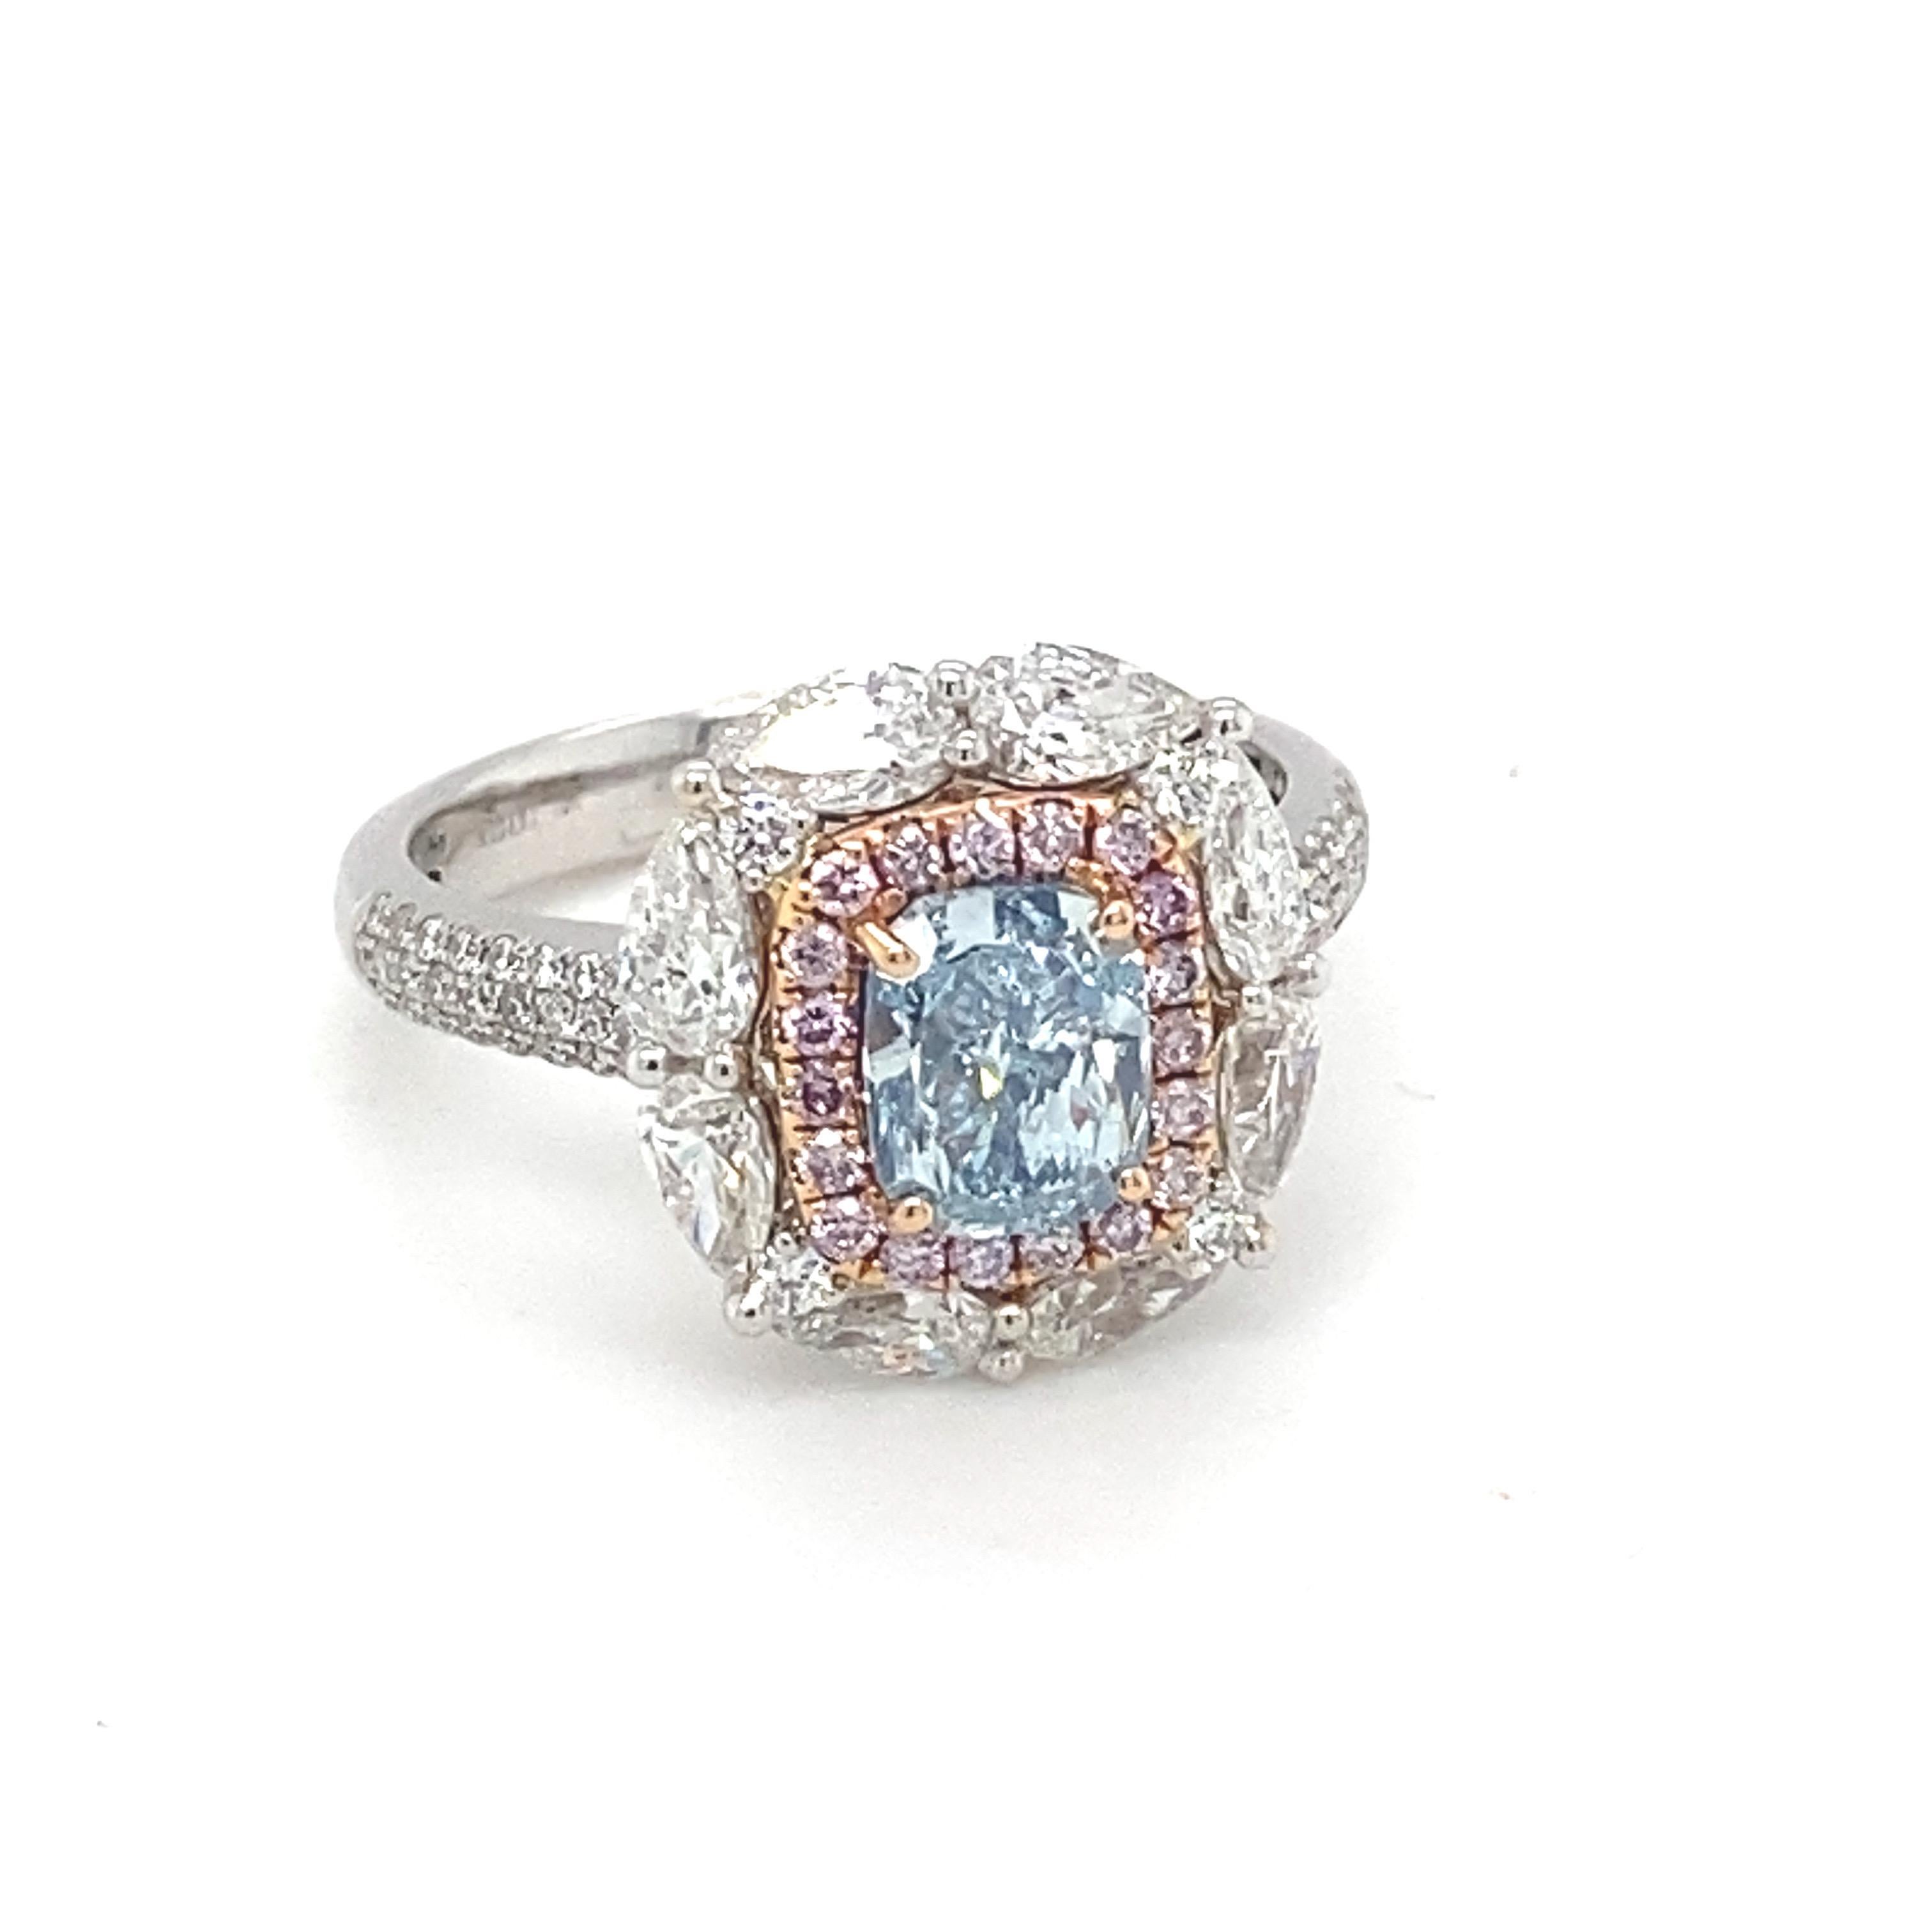 Este opulento anillo tiene un deseable Diamante Azul Natural certificado por el GIA de 1,20 quilates en forma de cojín, enmarcado por un brillante halo de diamante rosa rodeado por un diamante en forma de pera. ¡El espectacular resplandor de estos